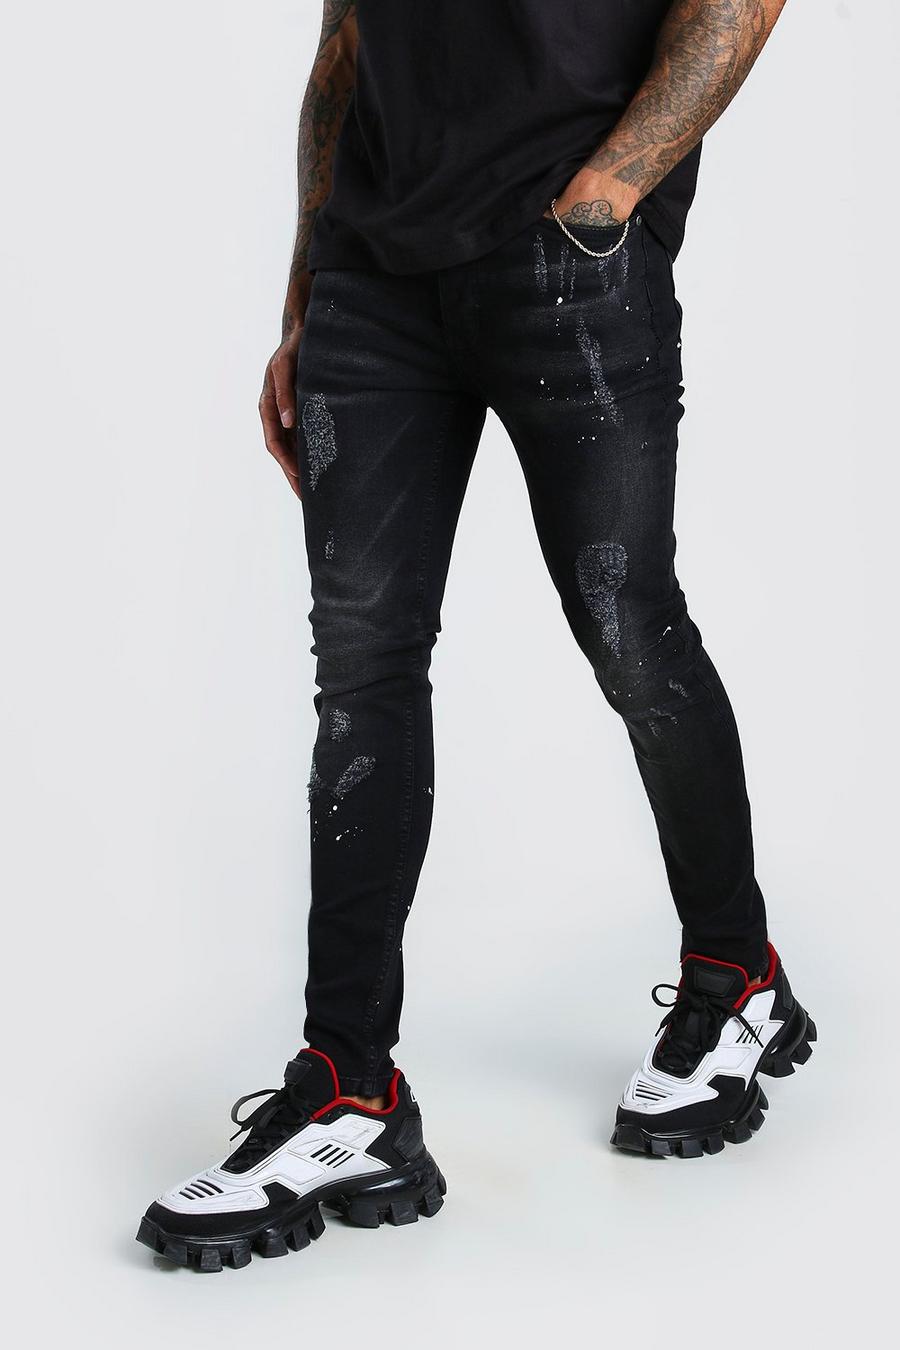 Zerrissene Super Skinny Jeans mit Farbspritzern, Verwaschenes schwarz